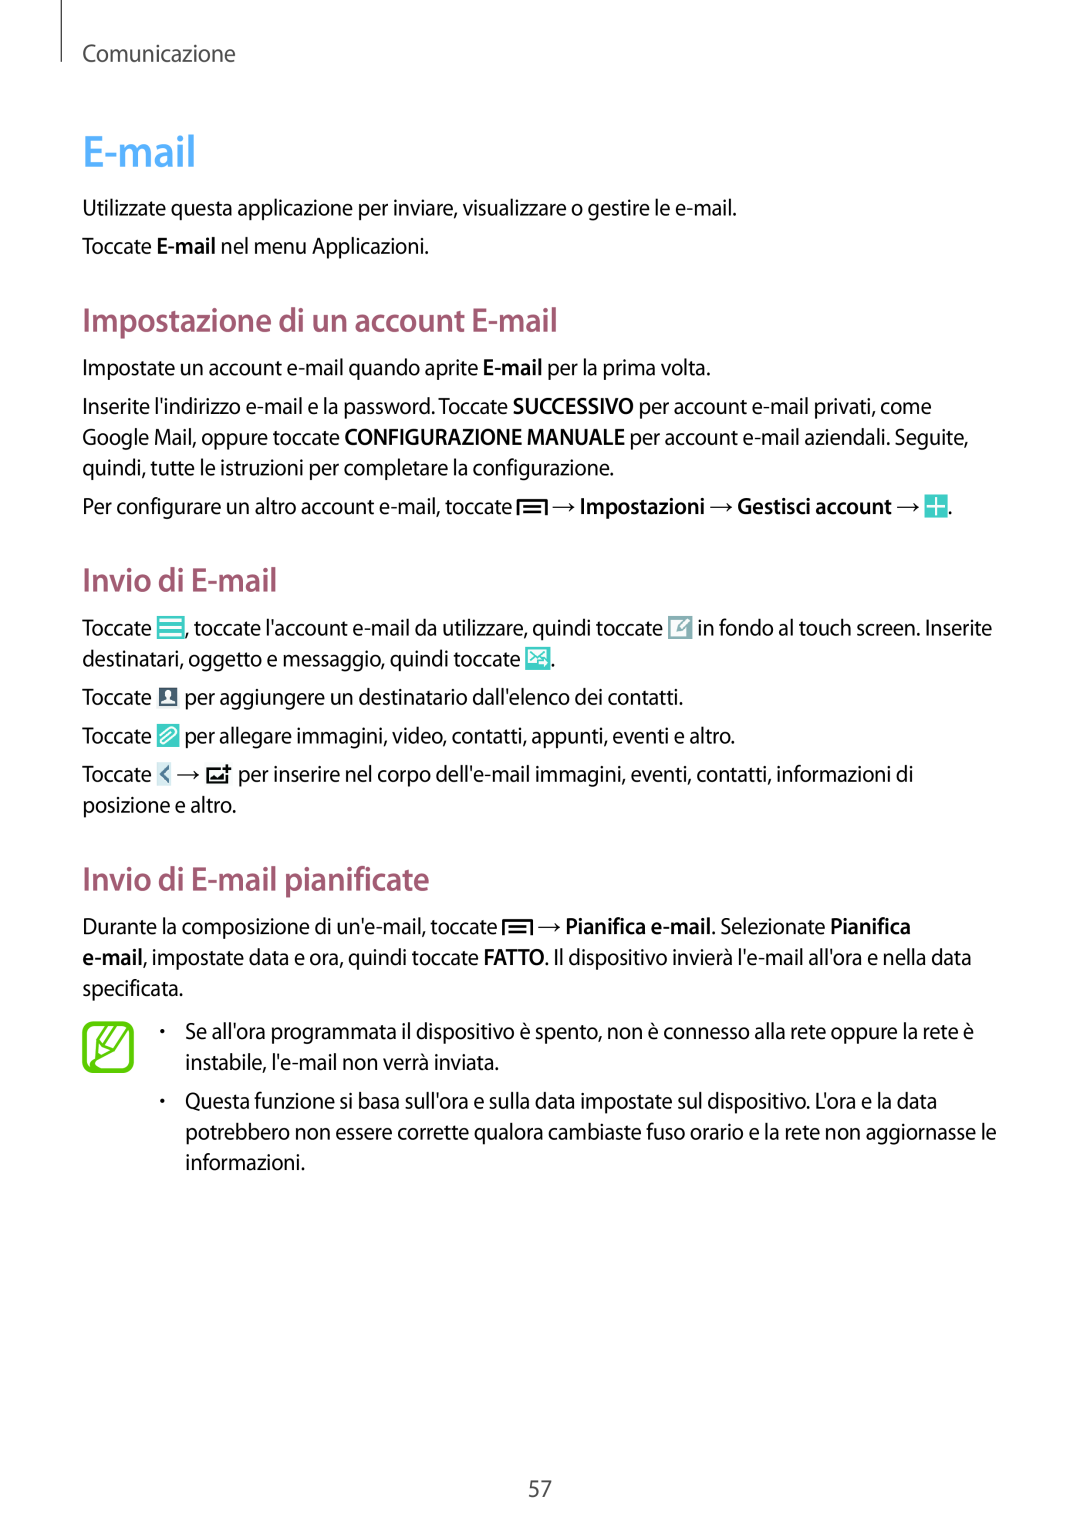 Samsung GT-I9515ZWAOMN manual Impostazione di un account E-mail, Invio di E-mail pianificate, Comunicazione 